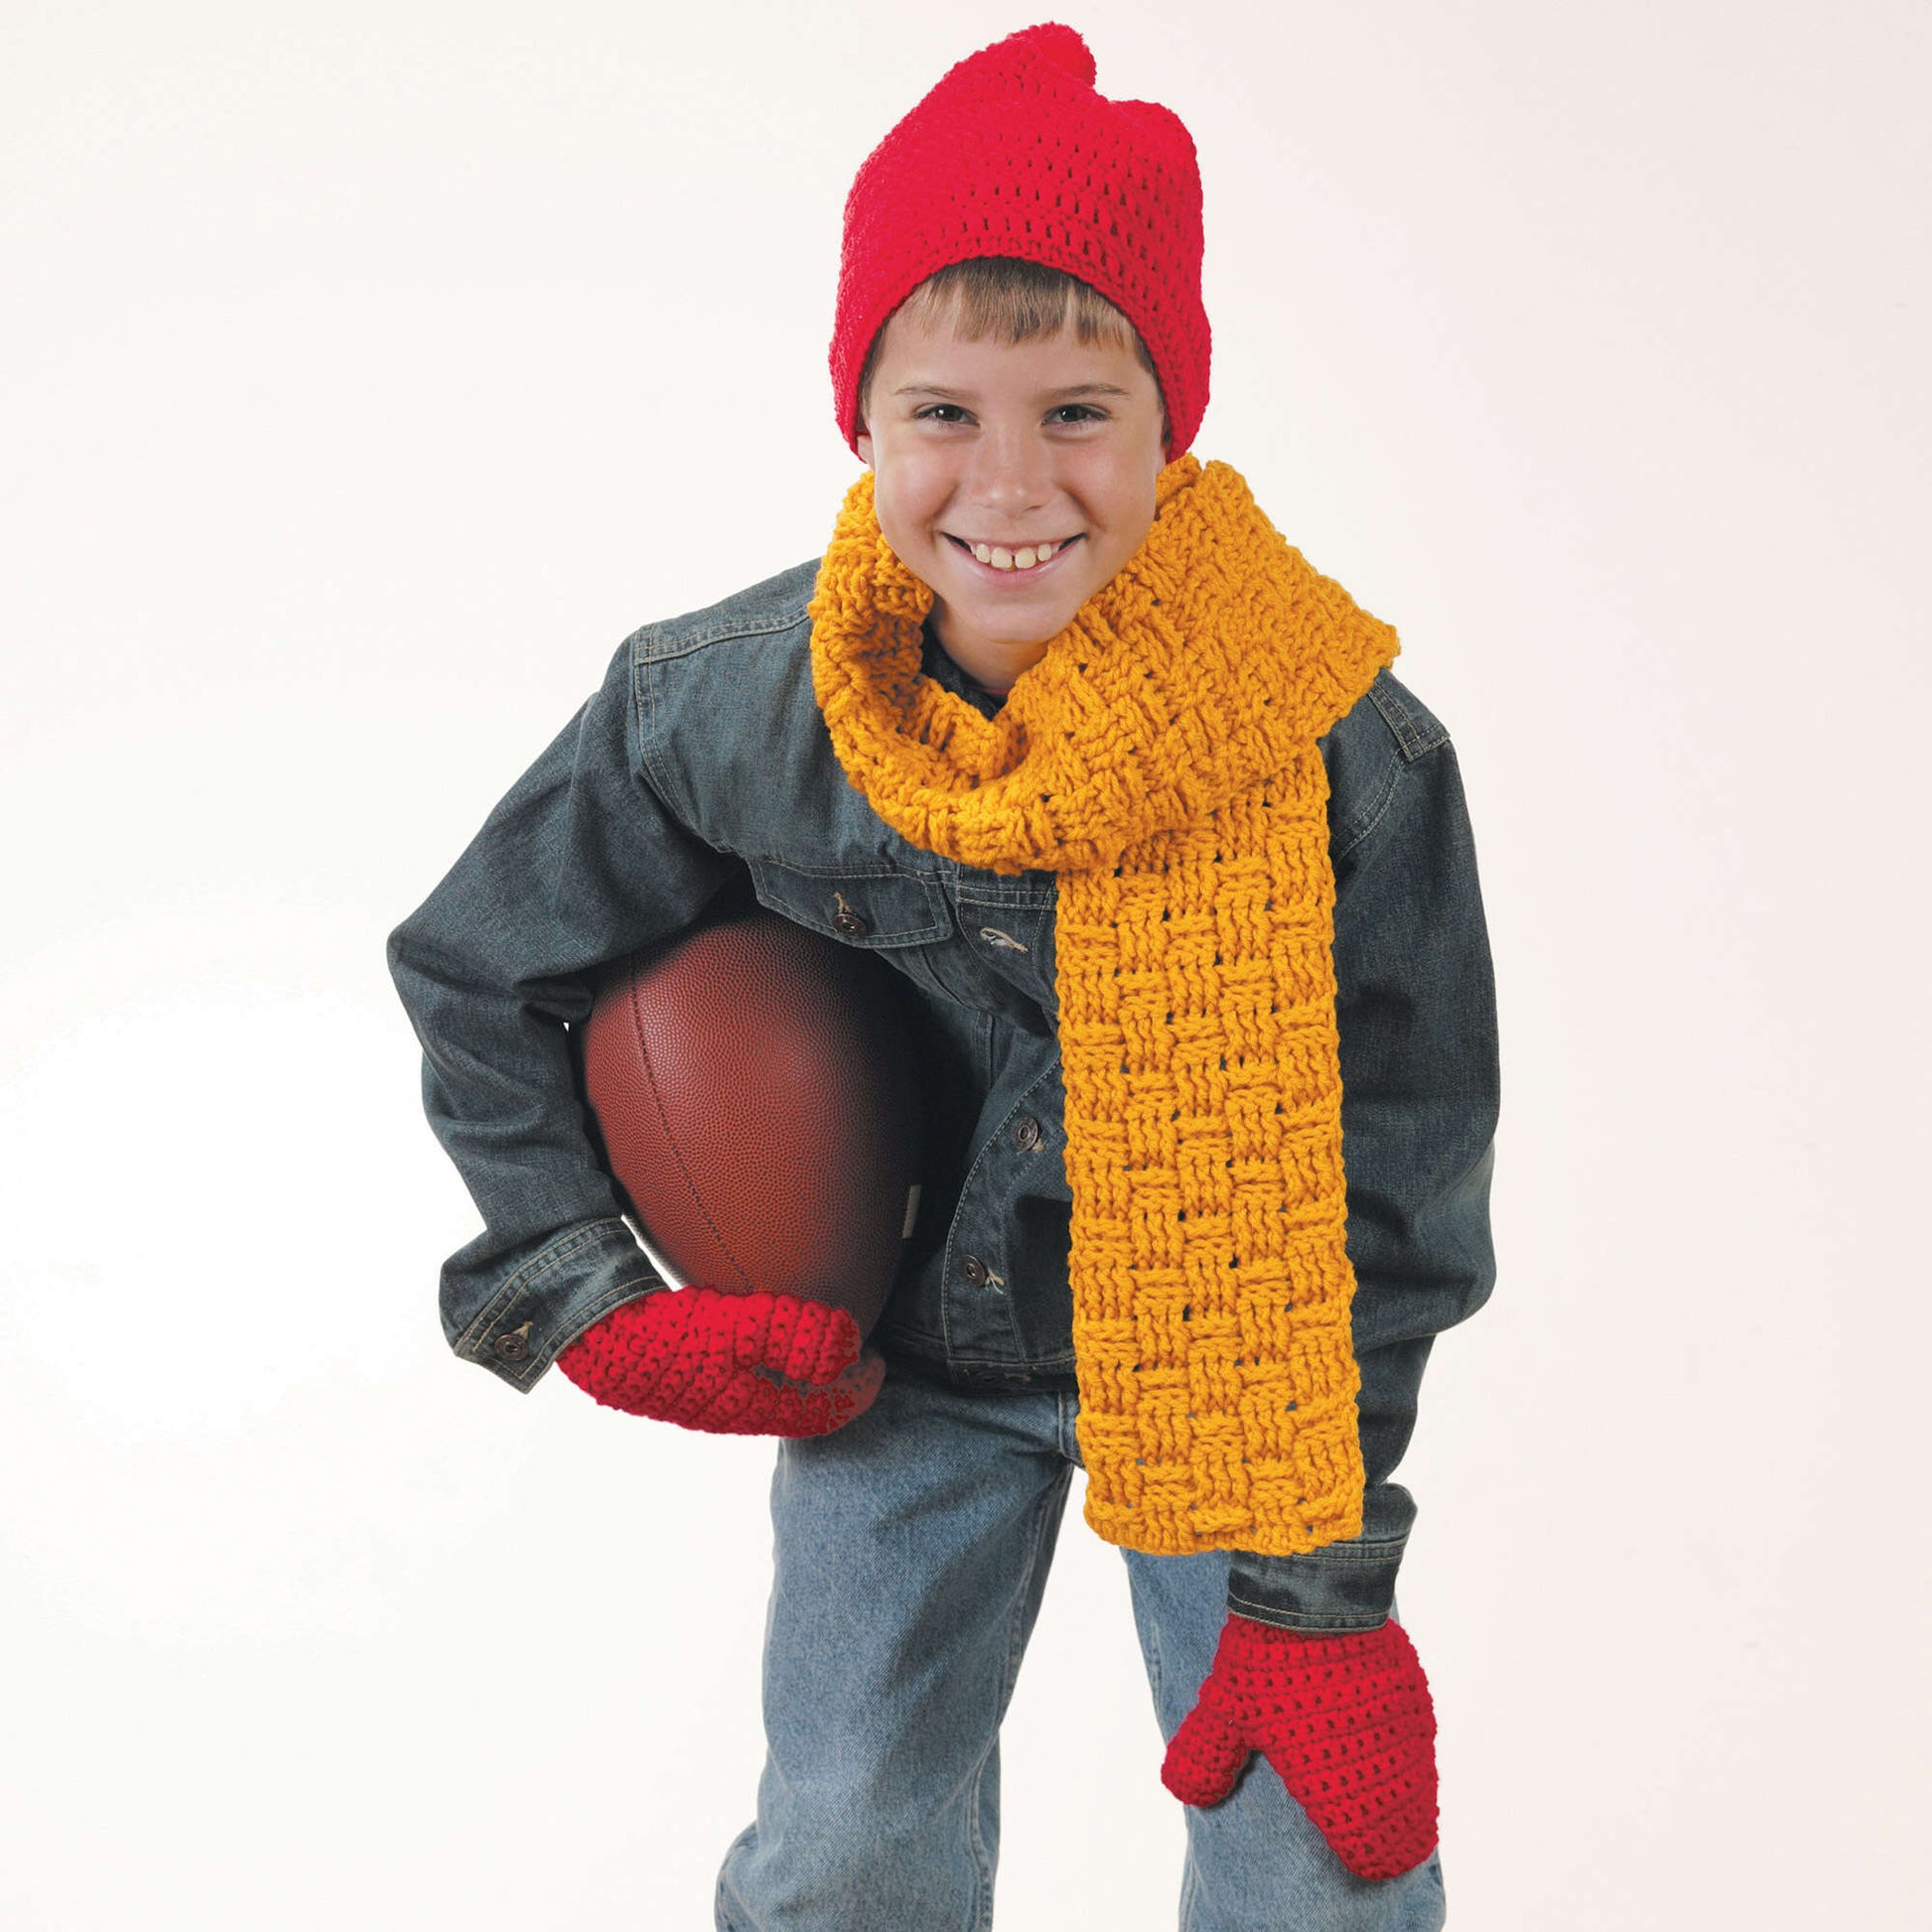 Free Red Heart Crochet Winter Wear Accessories Pattern